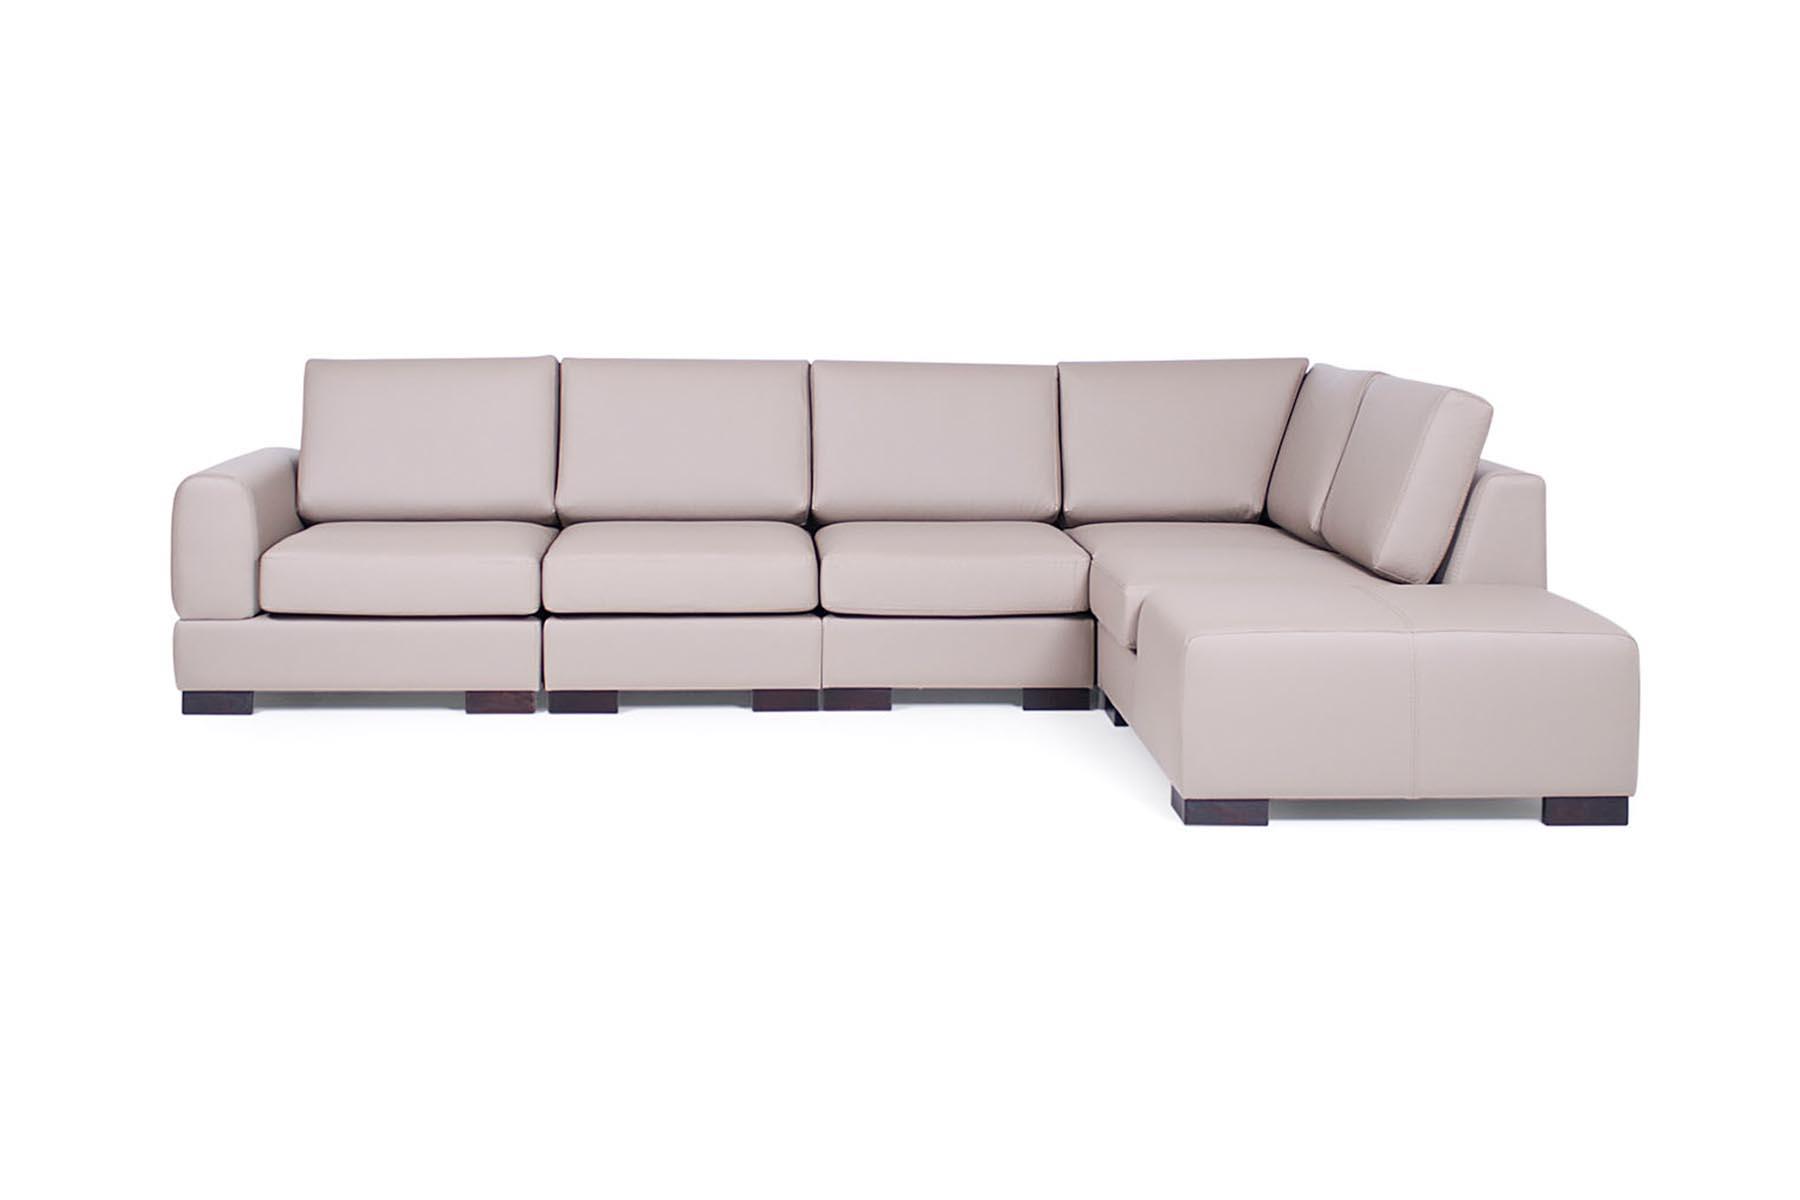 Sofa jednostavnih linija. Uklapa se u svaki enterijer i sa vašim izborom boje i štofa, dobivate idealnu garnituru za vaš prostor.